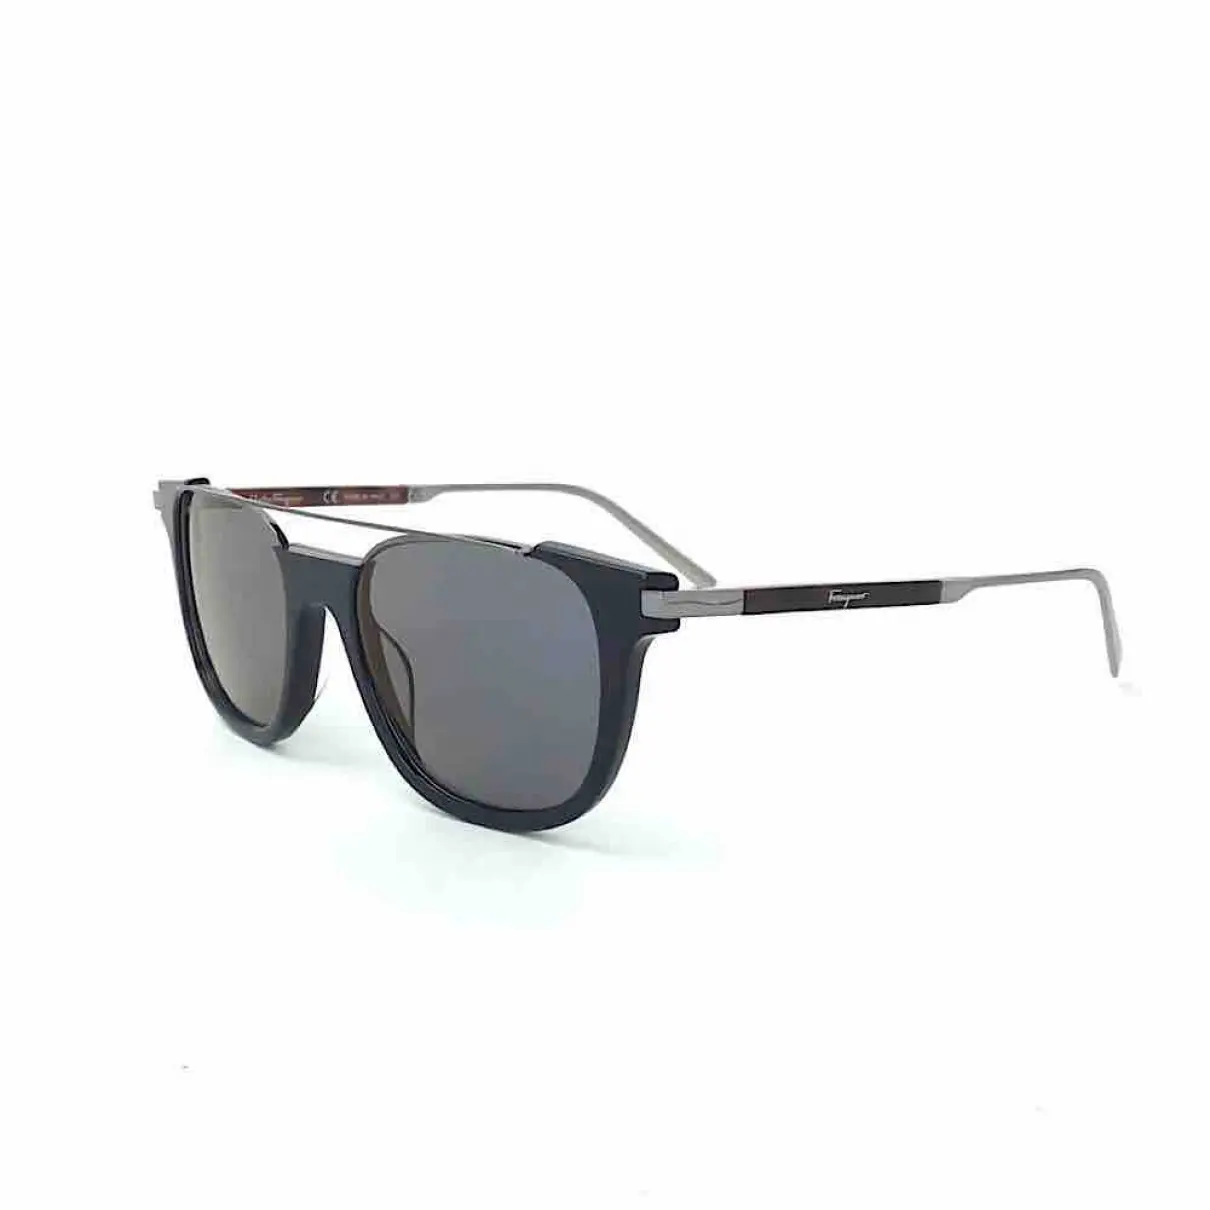 Salvatore Ferragamo Sunglasses for sale